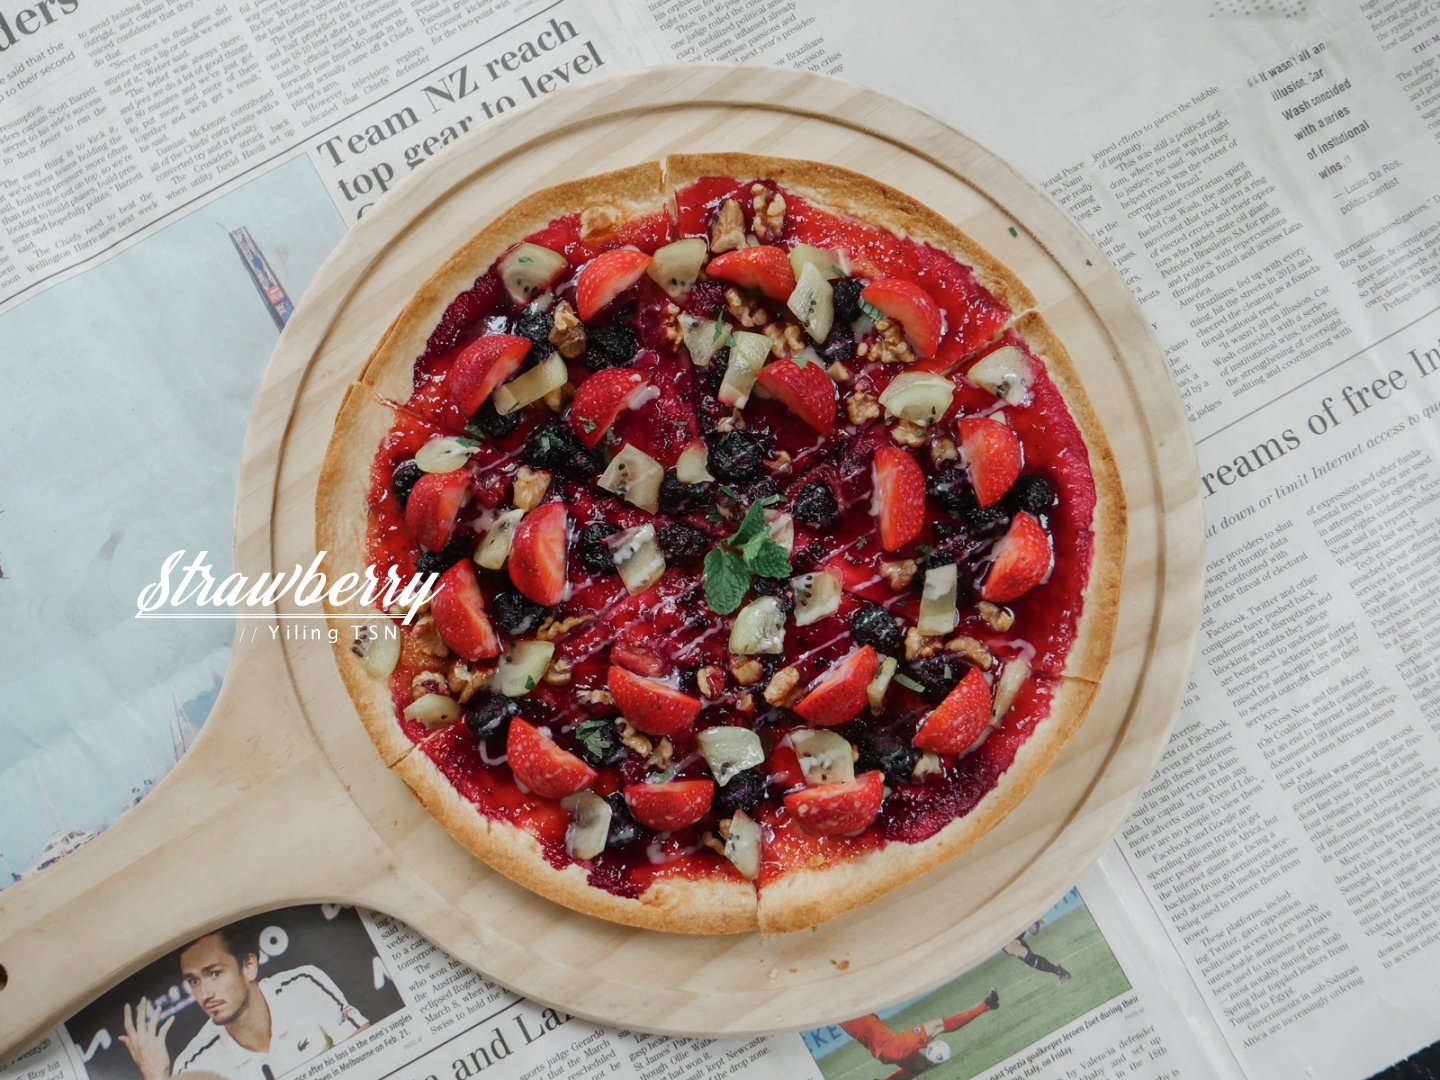 2022內湖草莓季推薦 莓圃休閒農園 免費入園採草莓 石板披薩排餐甜點草莓料理饗宴